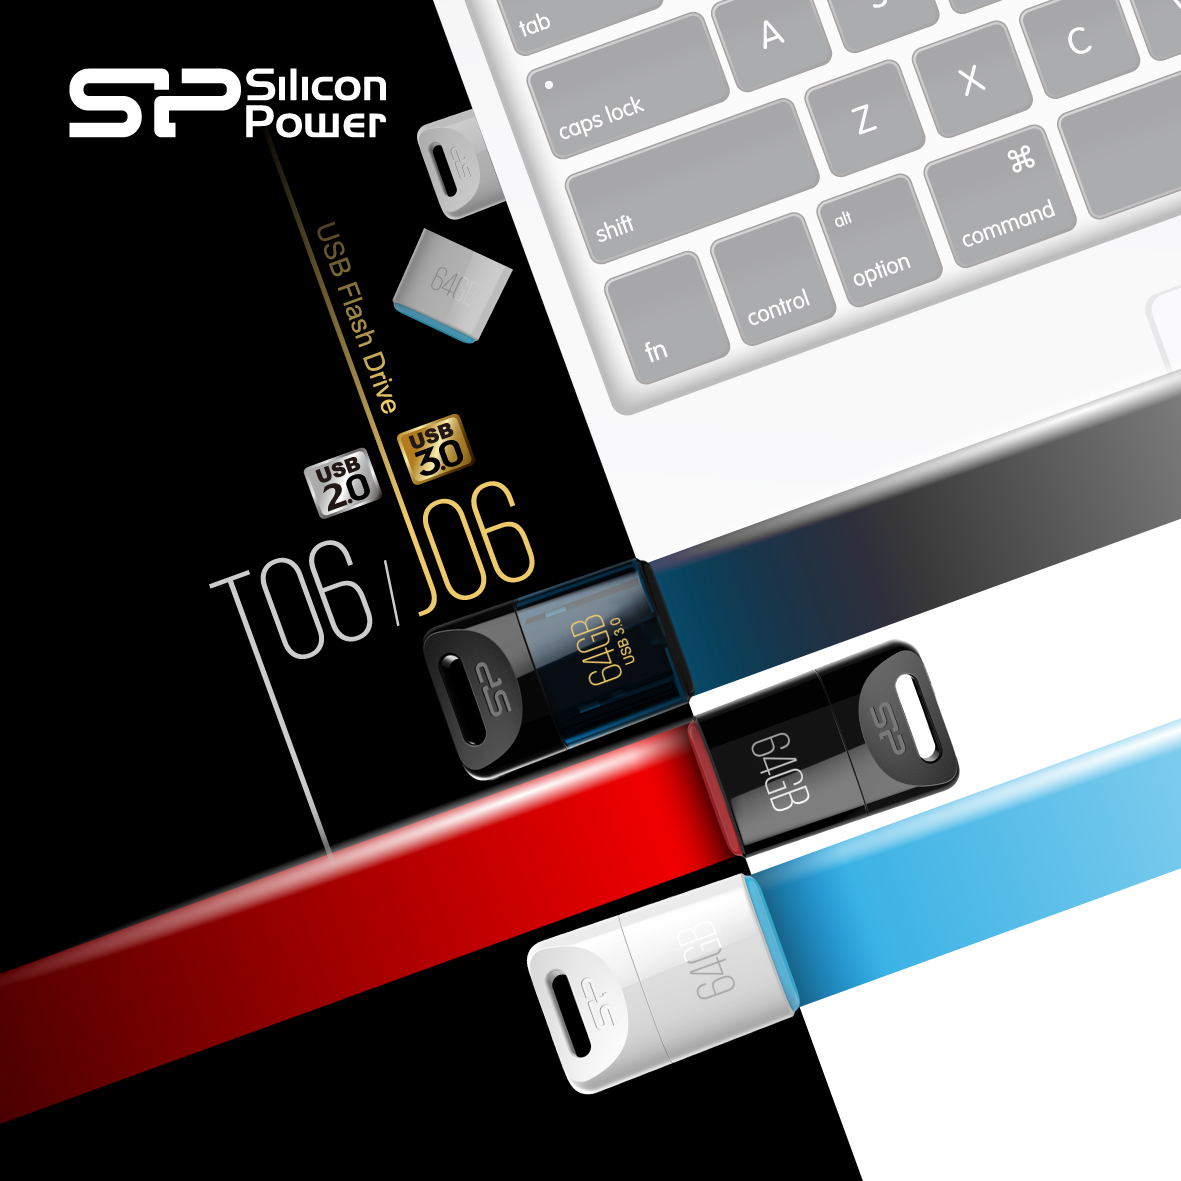 Флеш-накопители Touch T06 с USB 2.0 и Jewel J06 с USB 3.0 от компании Silicon Power: компактные, легкие и эффектные